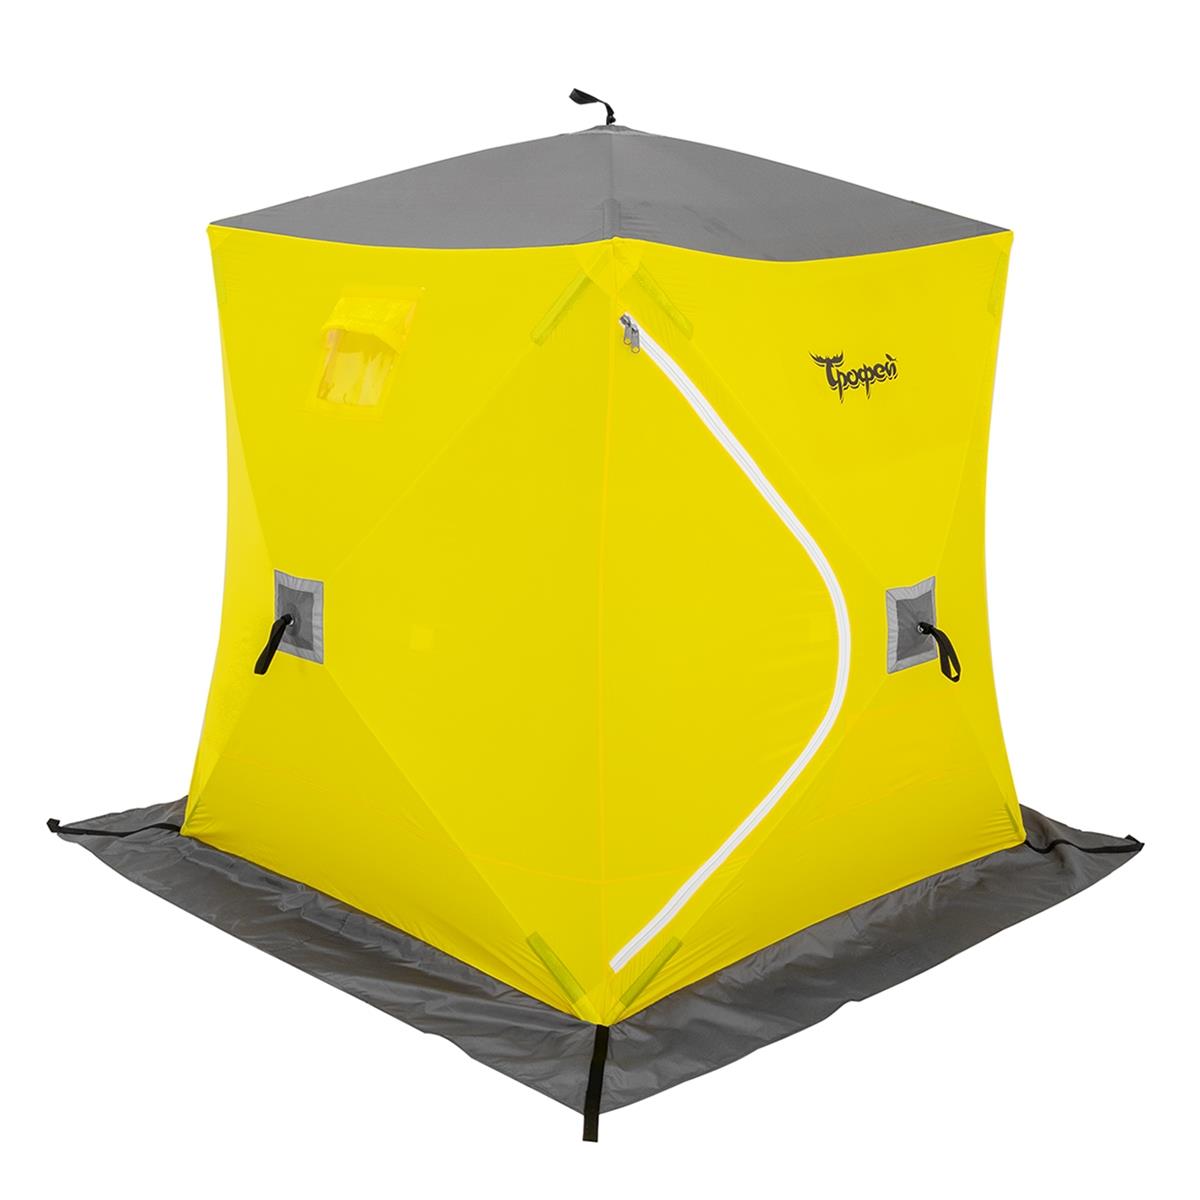 Палатка зимняя Куб 1,5х1,5 желтый/серый (TR-WSC-150YG) ТРОФЕЙ палатка зимняя piramida 2 0х2 0 yellow gray tr isp 200yg трофей